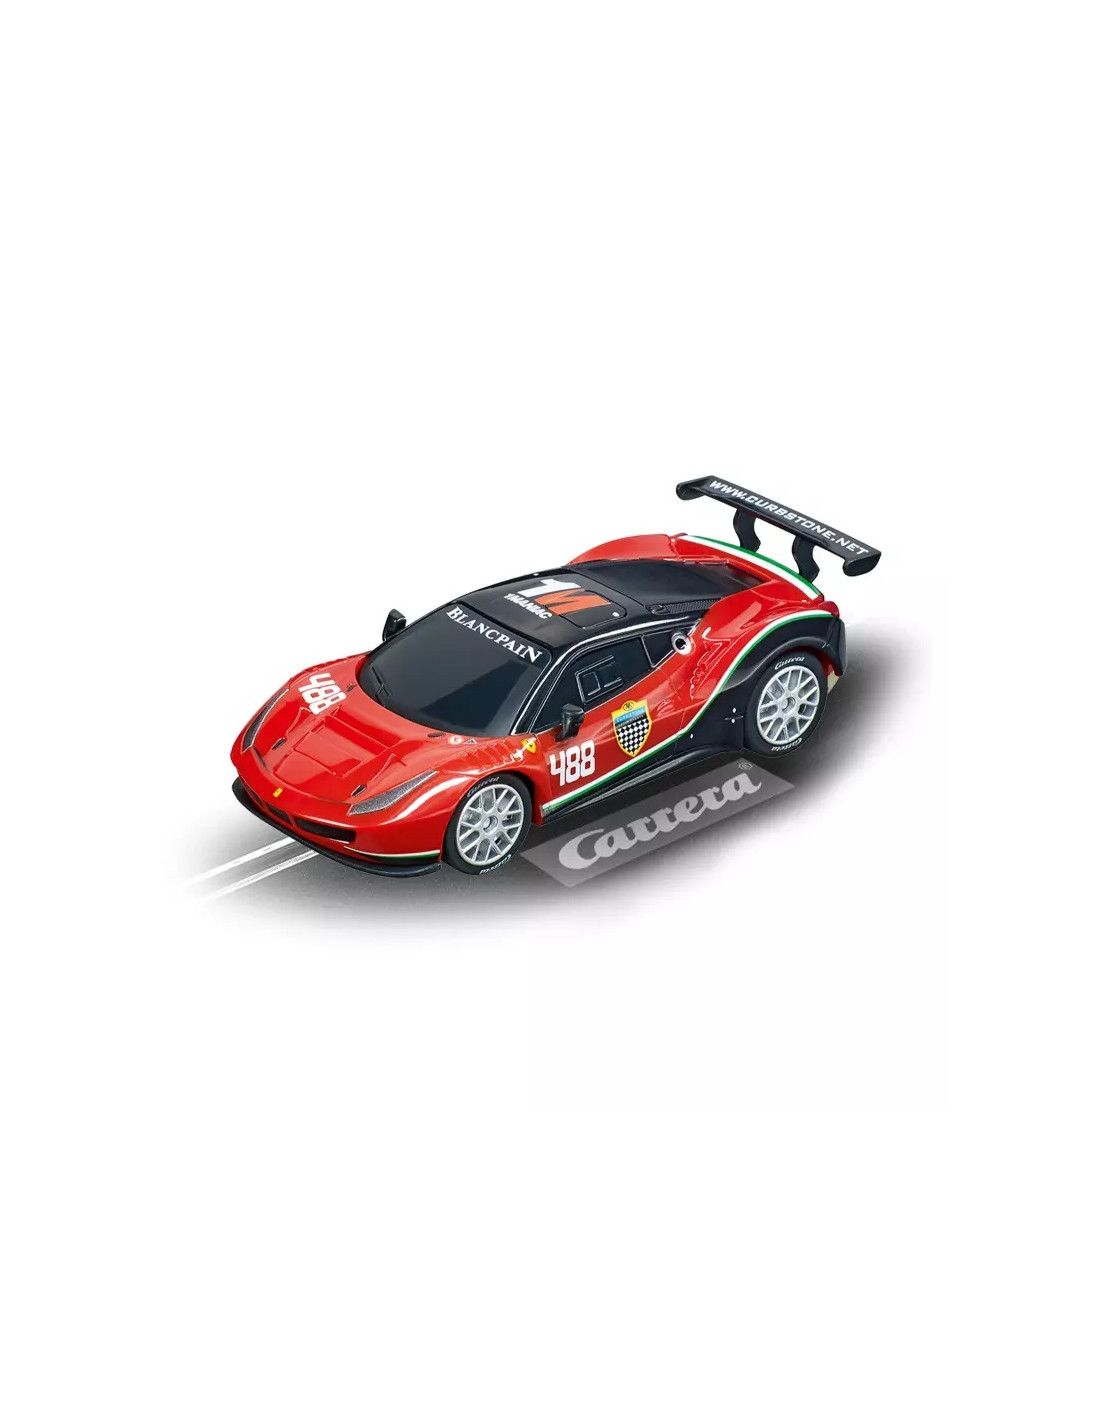 Carrera Go, Ferrari Pro Speeders —